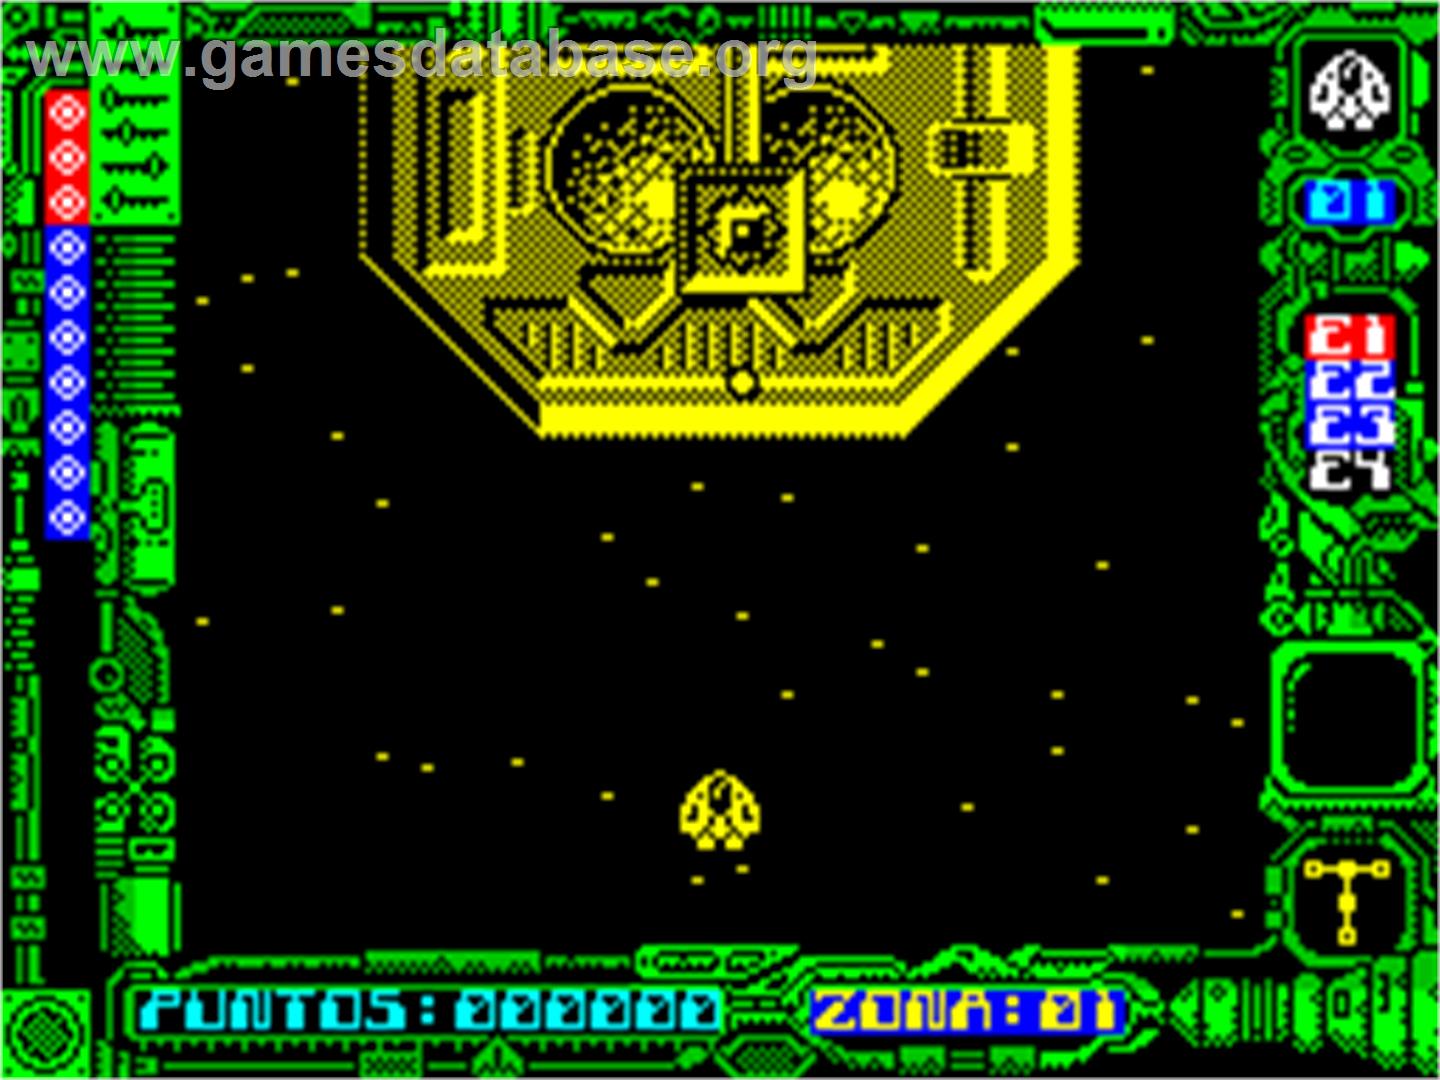 Stardust - Sinclair ZX Spectrum - Artwork - In Game